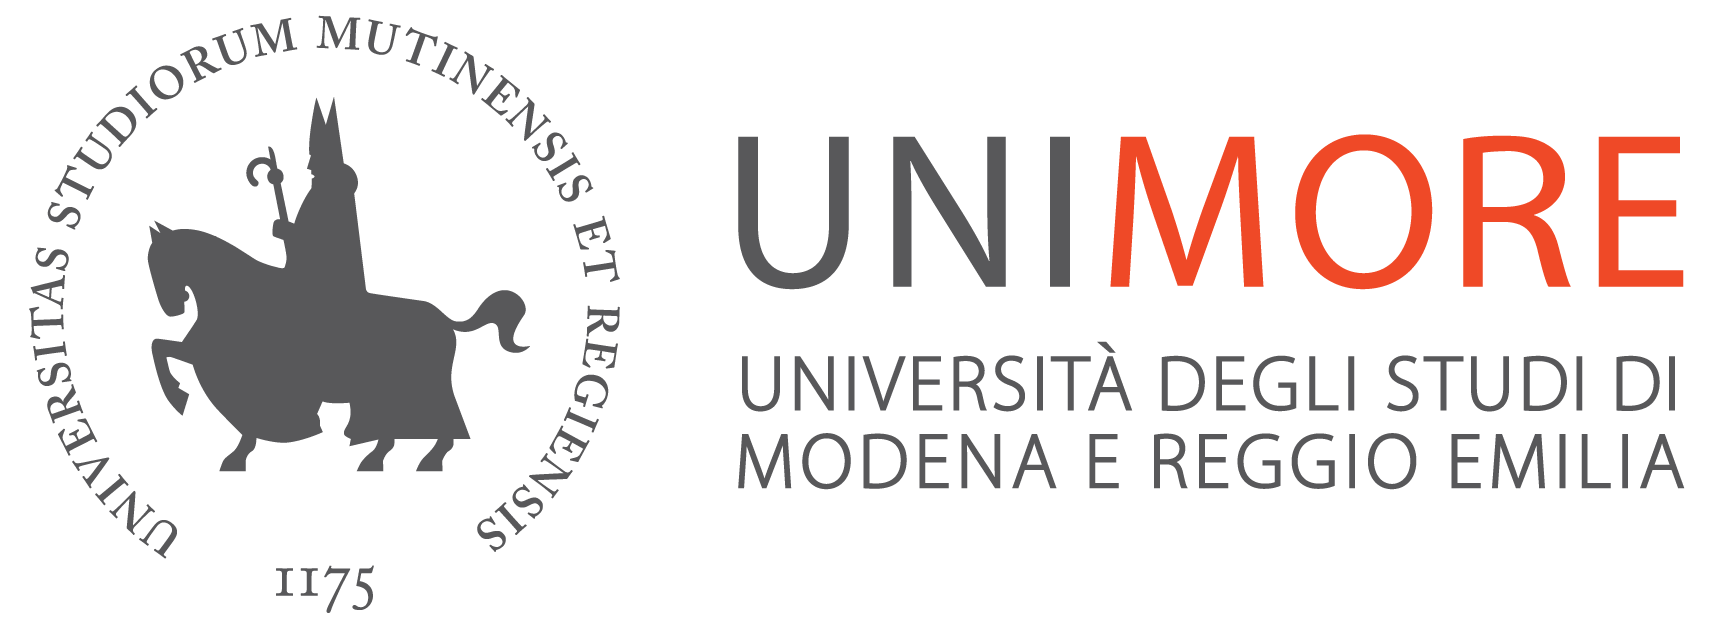 logo_univ_modena.png